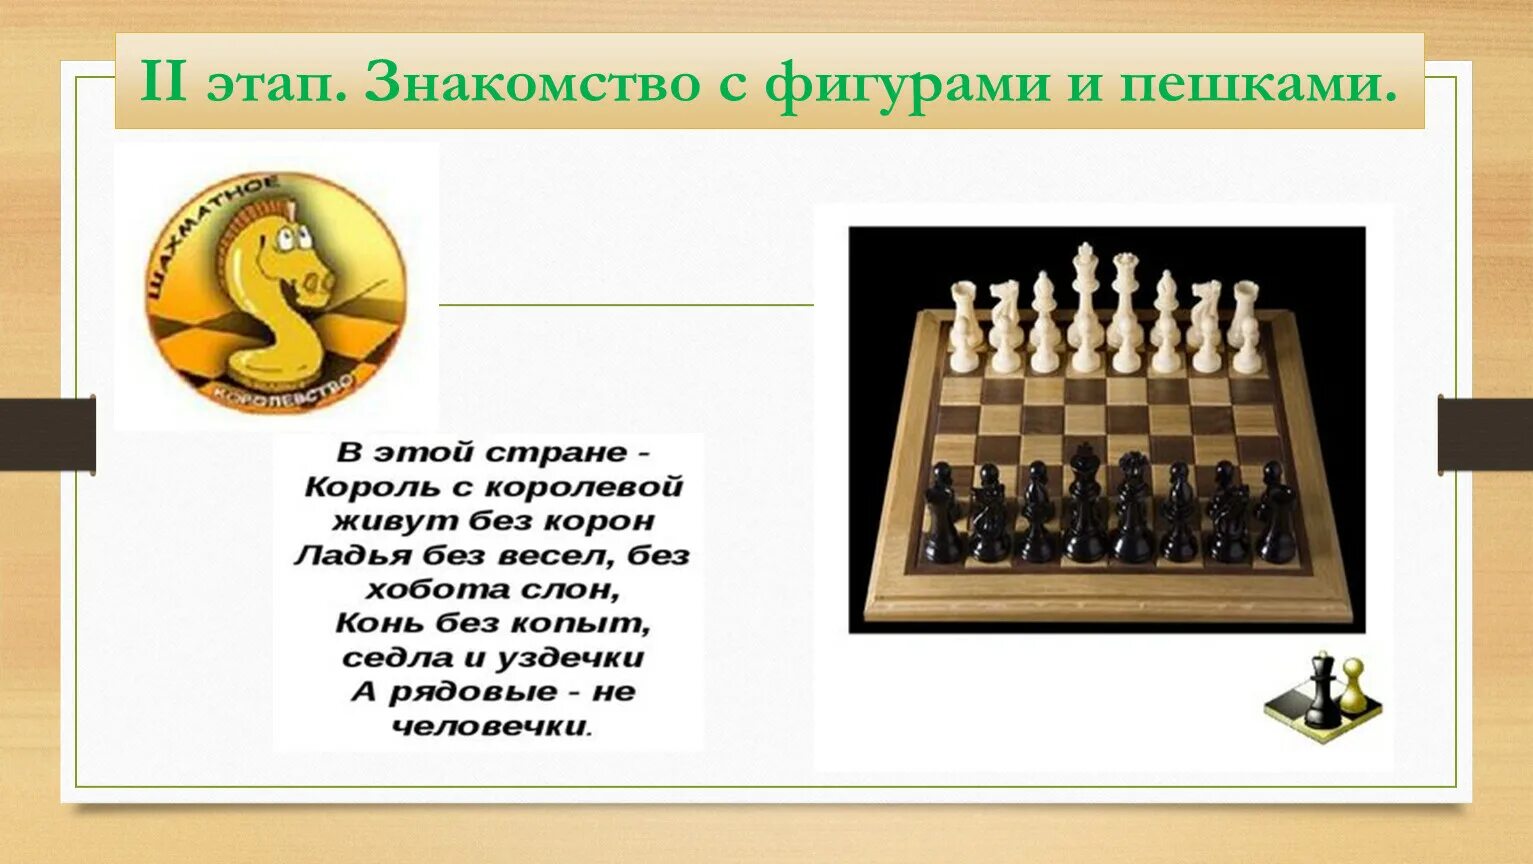 История шахмат. Название фигур в шахматах. Беседа с детьми на тему шахмат. Доклад на тему шахматы.